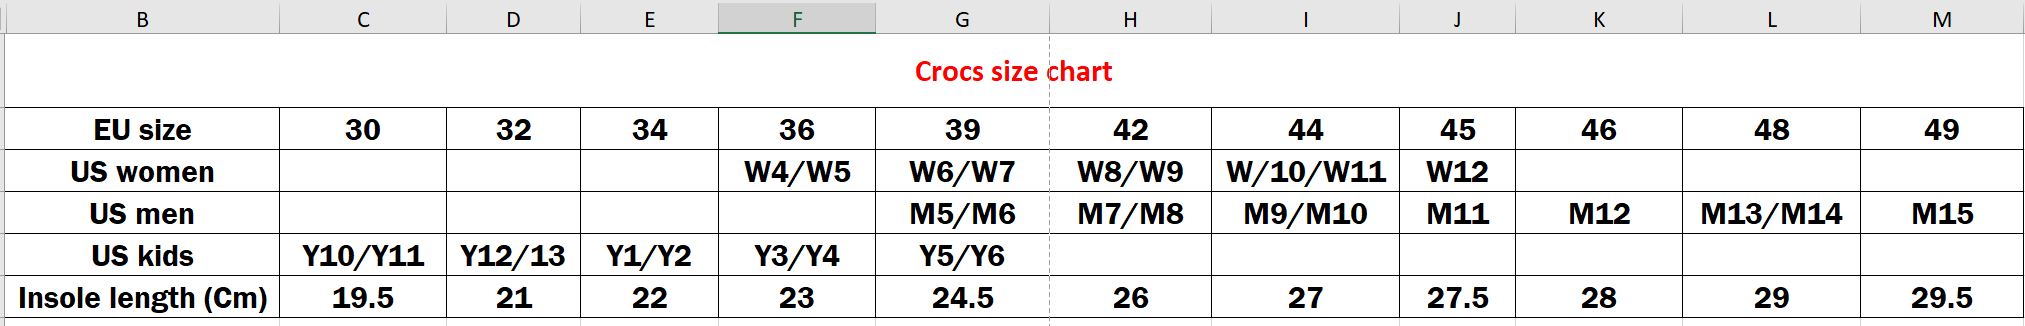 crocs shoe size chart